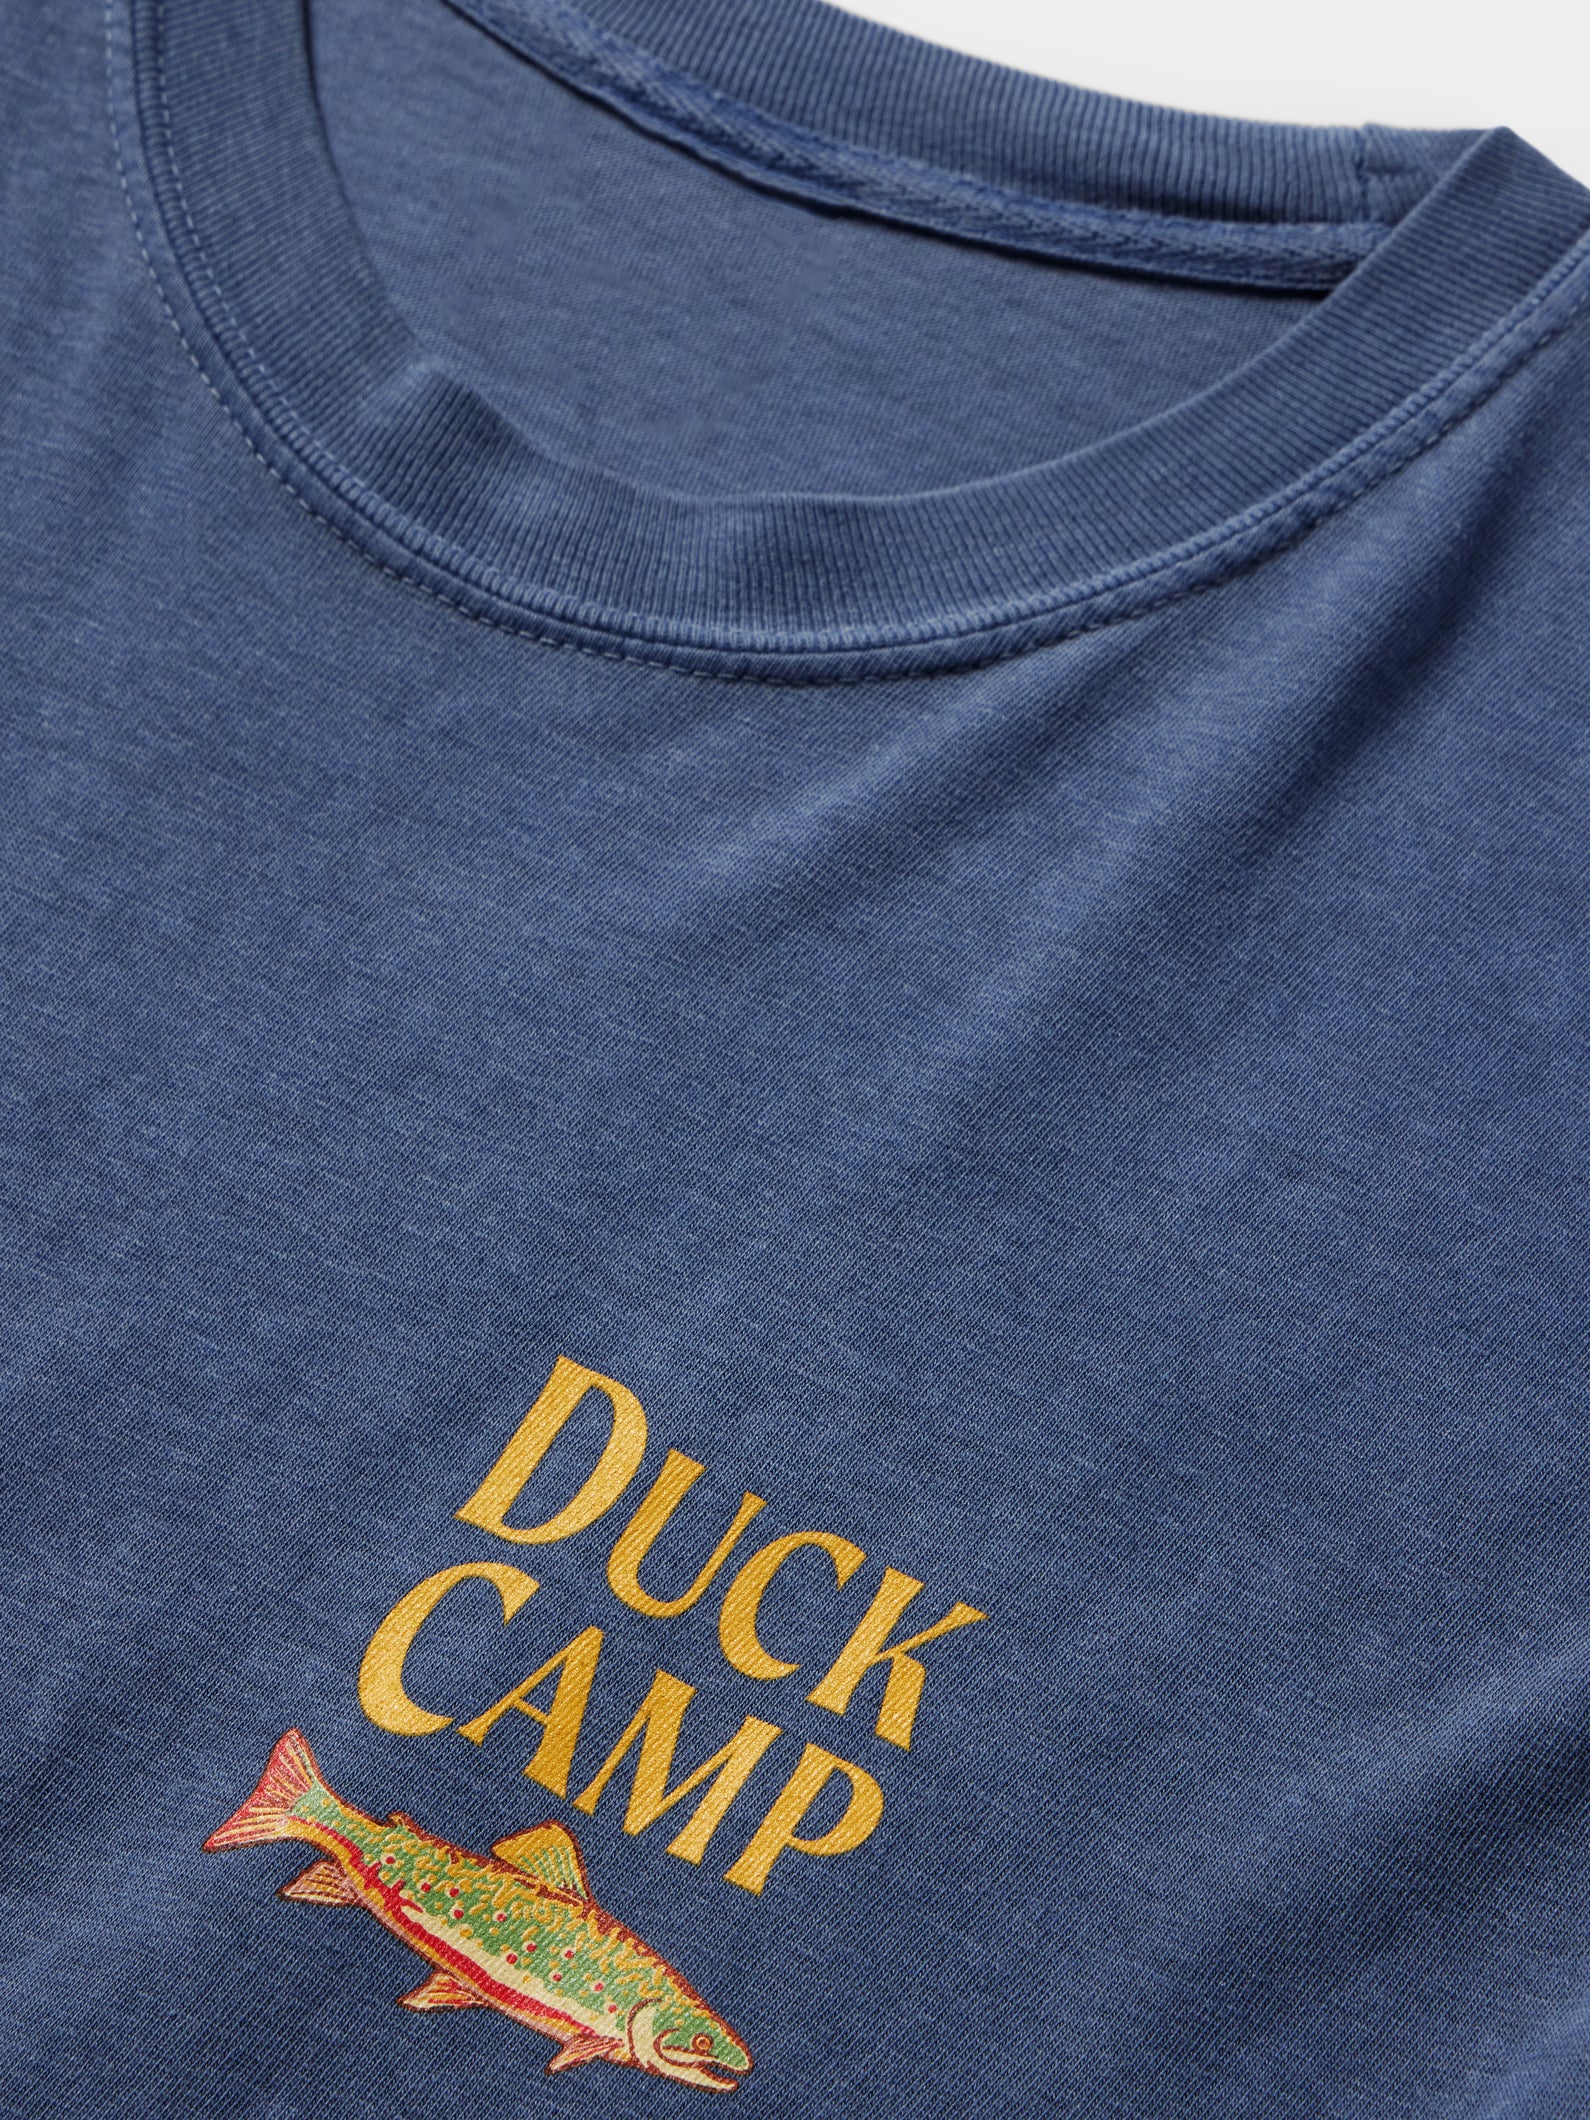 Duck Camp Outfitters T-Shirt - Dark Denim